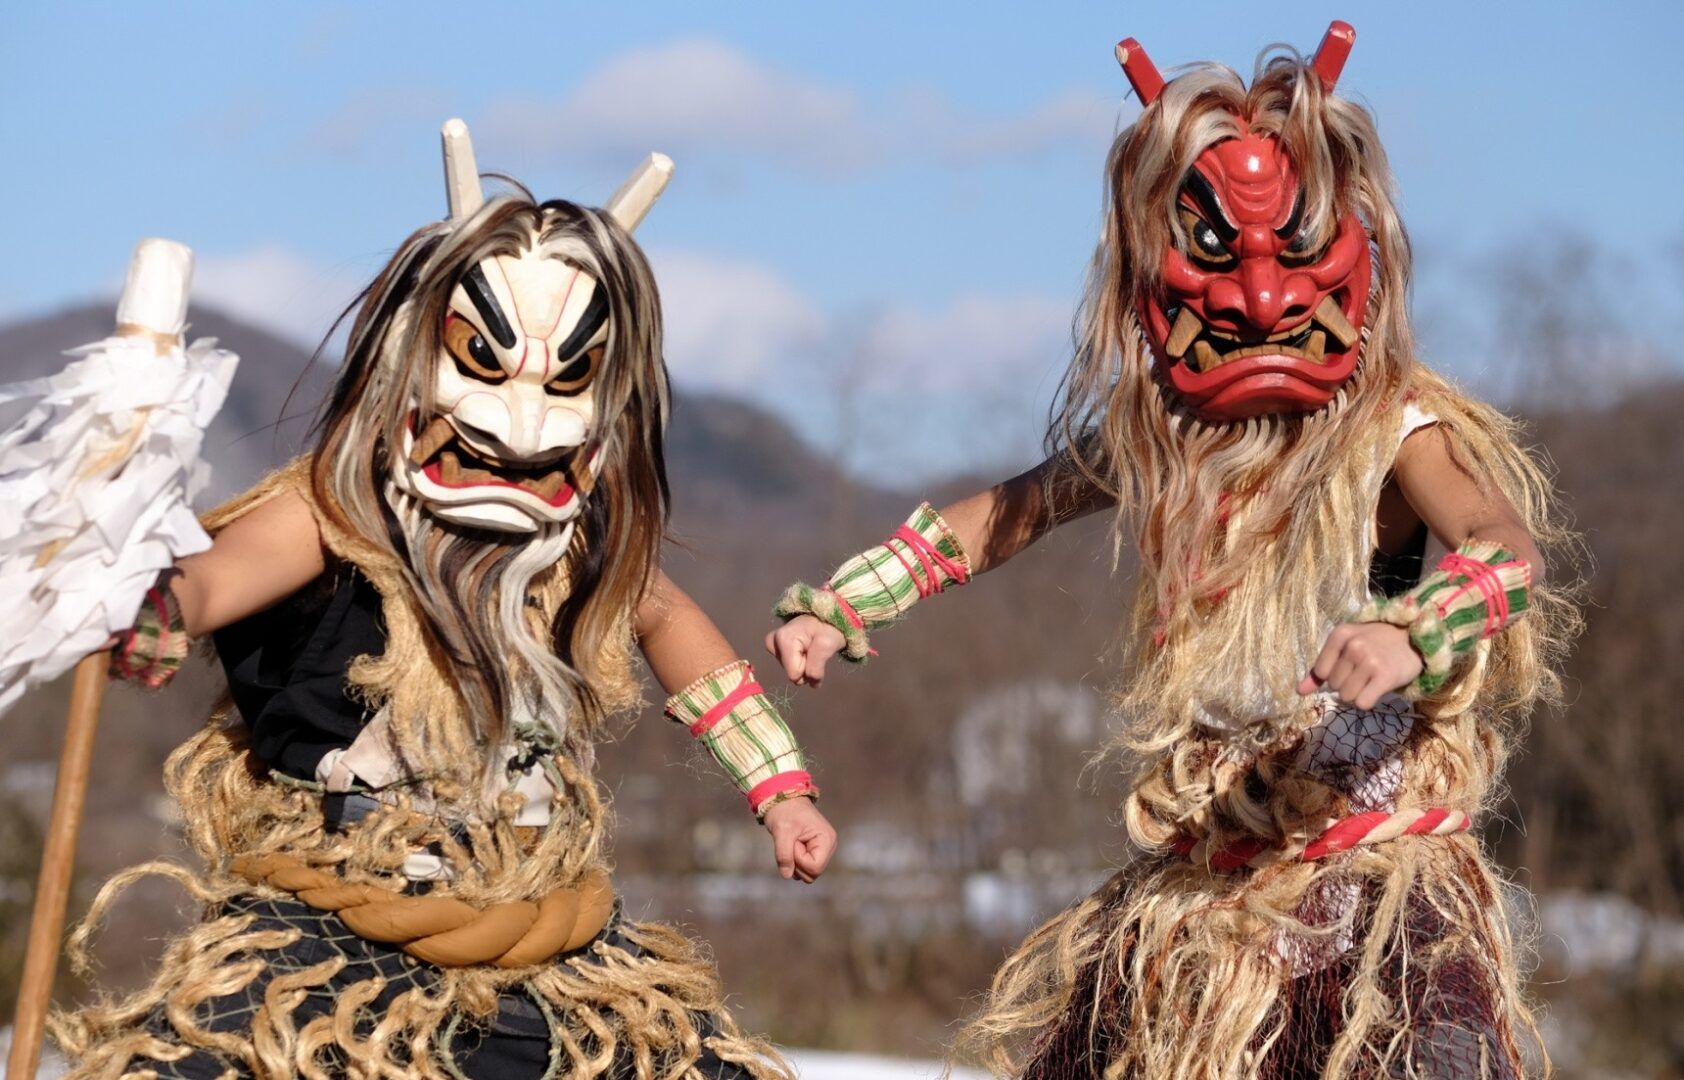 Oni - Origem, curiosidades e lendas sobre os demônios japoneses